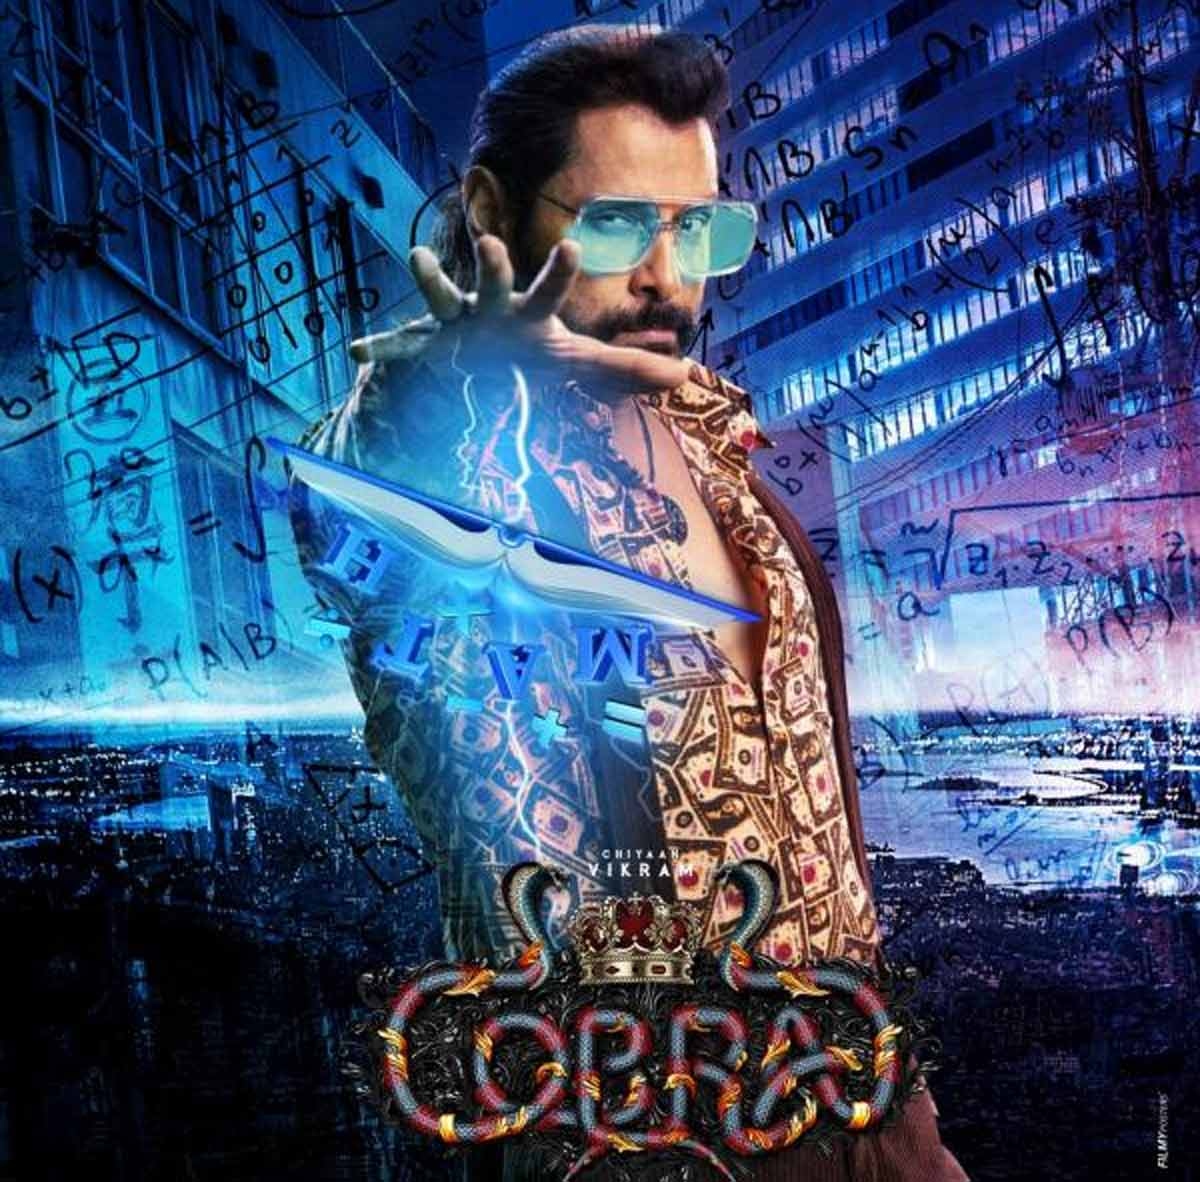 Cobra Movie Review